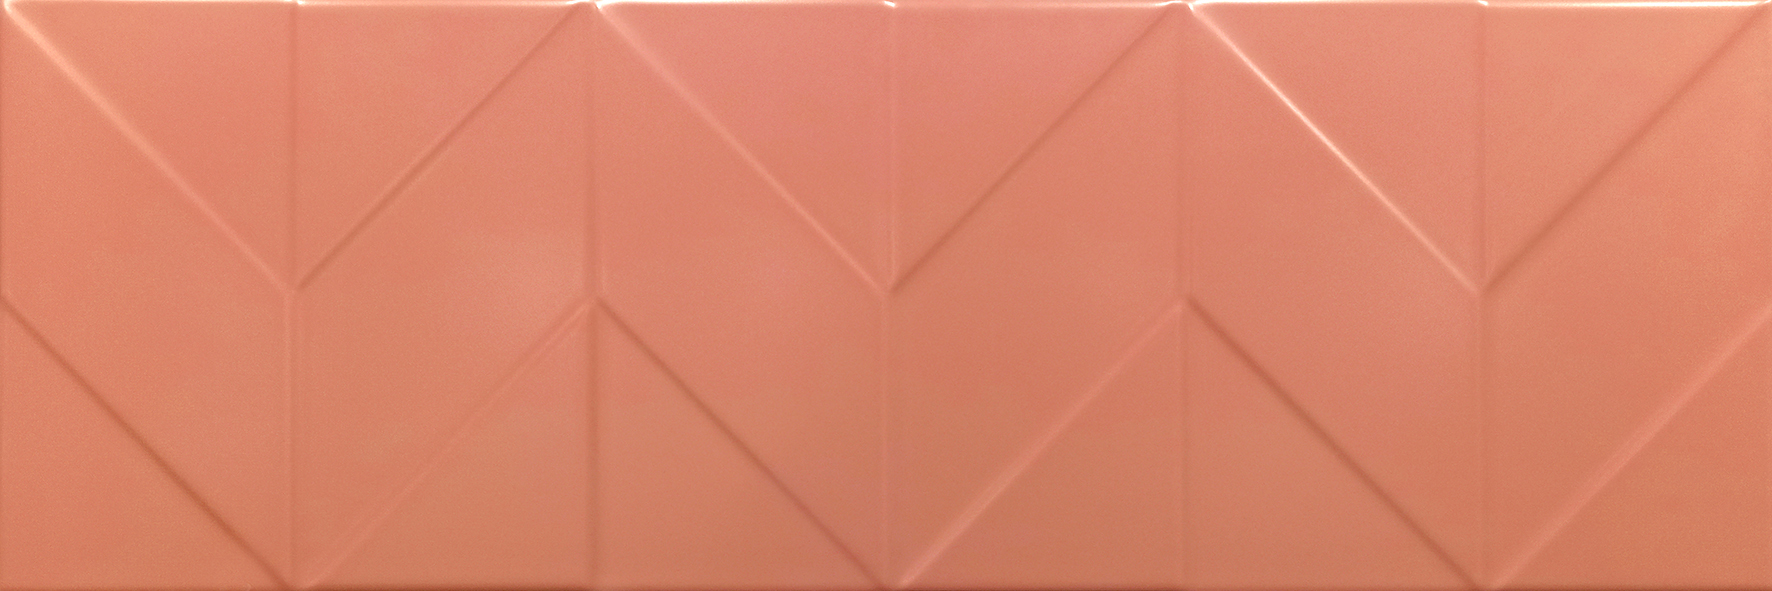 картинка Танага 6Д 750*250 оранжевый с1 (1,69м.кв.) от Керамин-Нева (керамическая плитка, керамогранит)